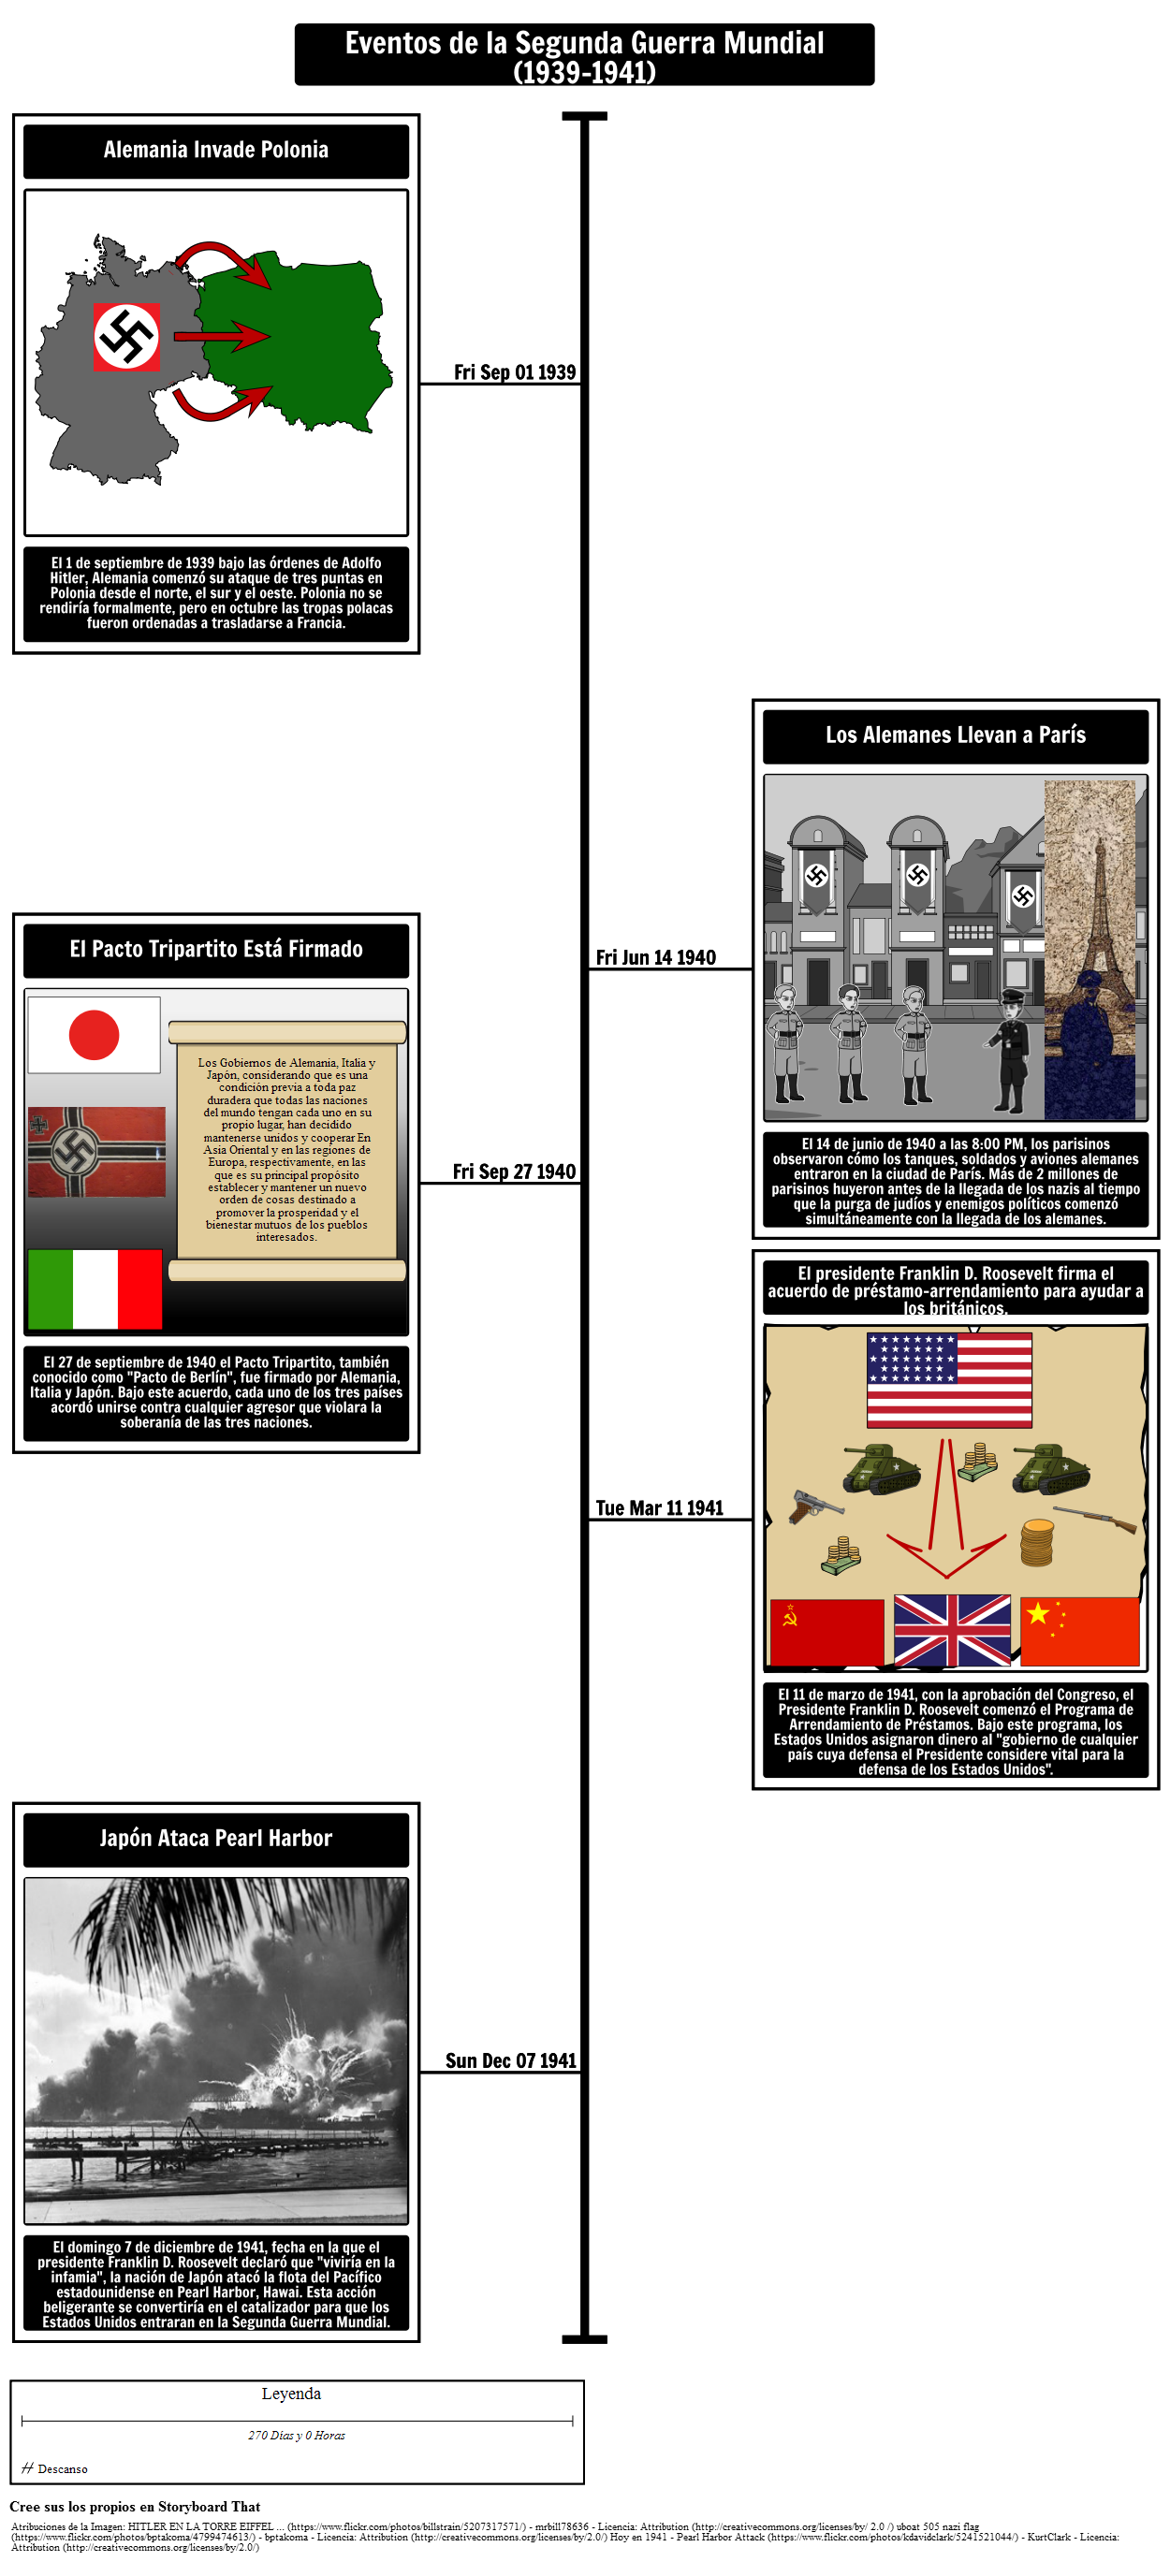 Cronología de la Segunda Guerra Mundial 1939-1941